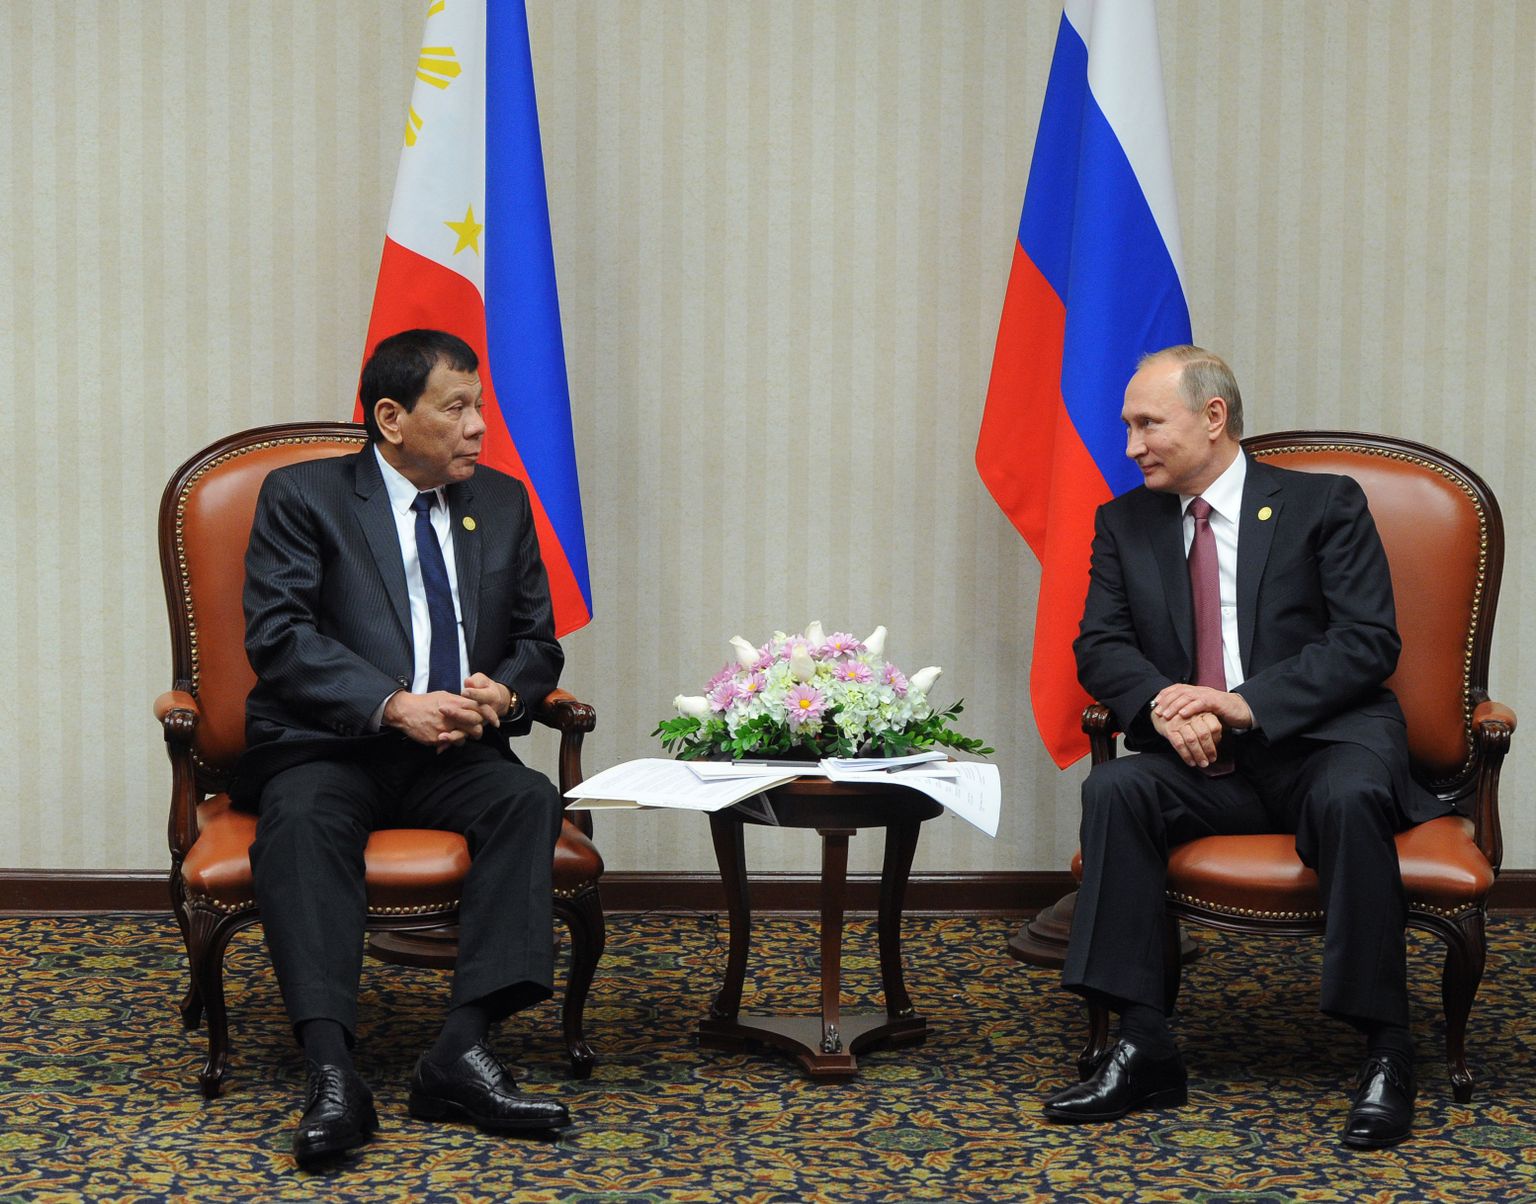 Vene riigipea Vladimir Putin ja  Filipiinide president Rodrigo Duterte kohtusid eile APEC foorumil Peruu pealinnas Limas.